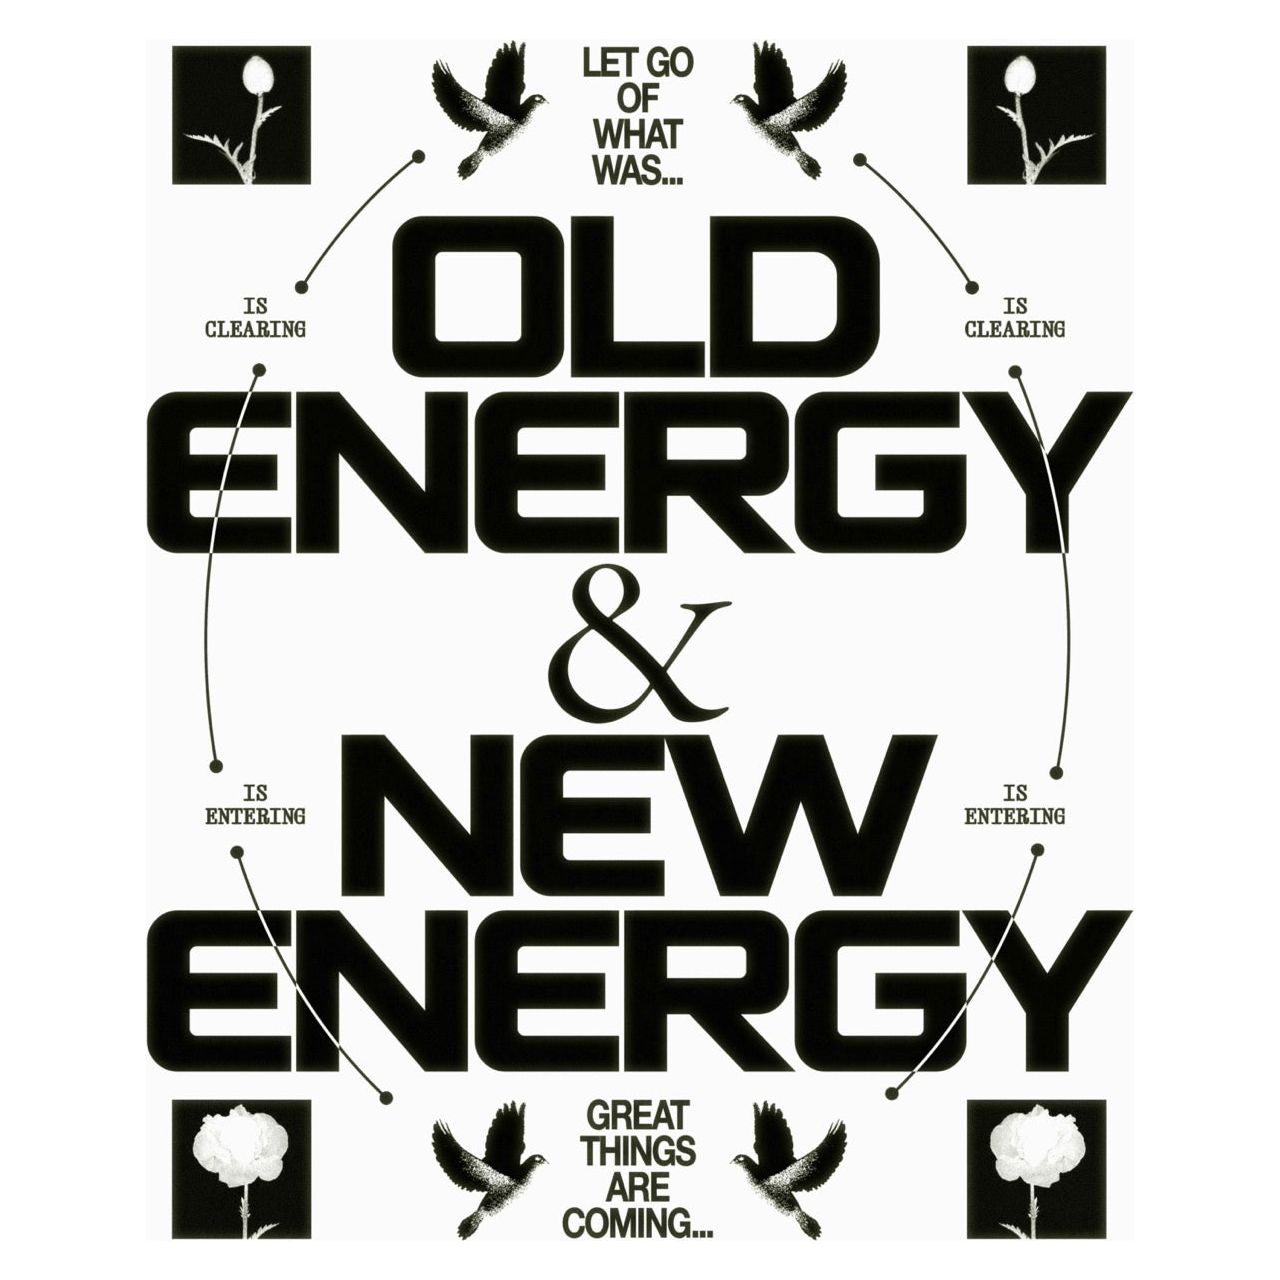 New Energy - Black & White - Epi.to.me